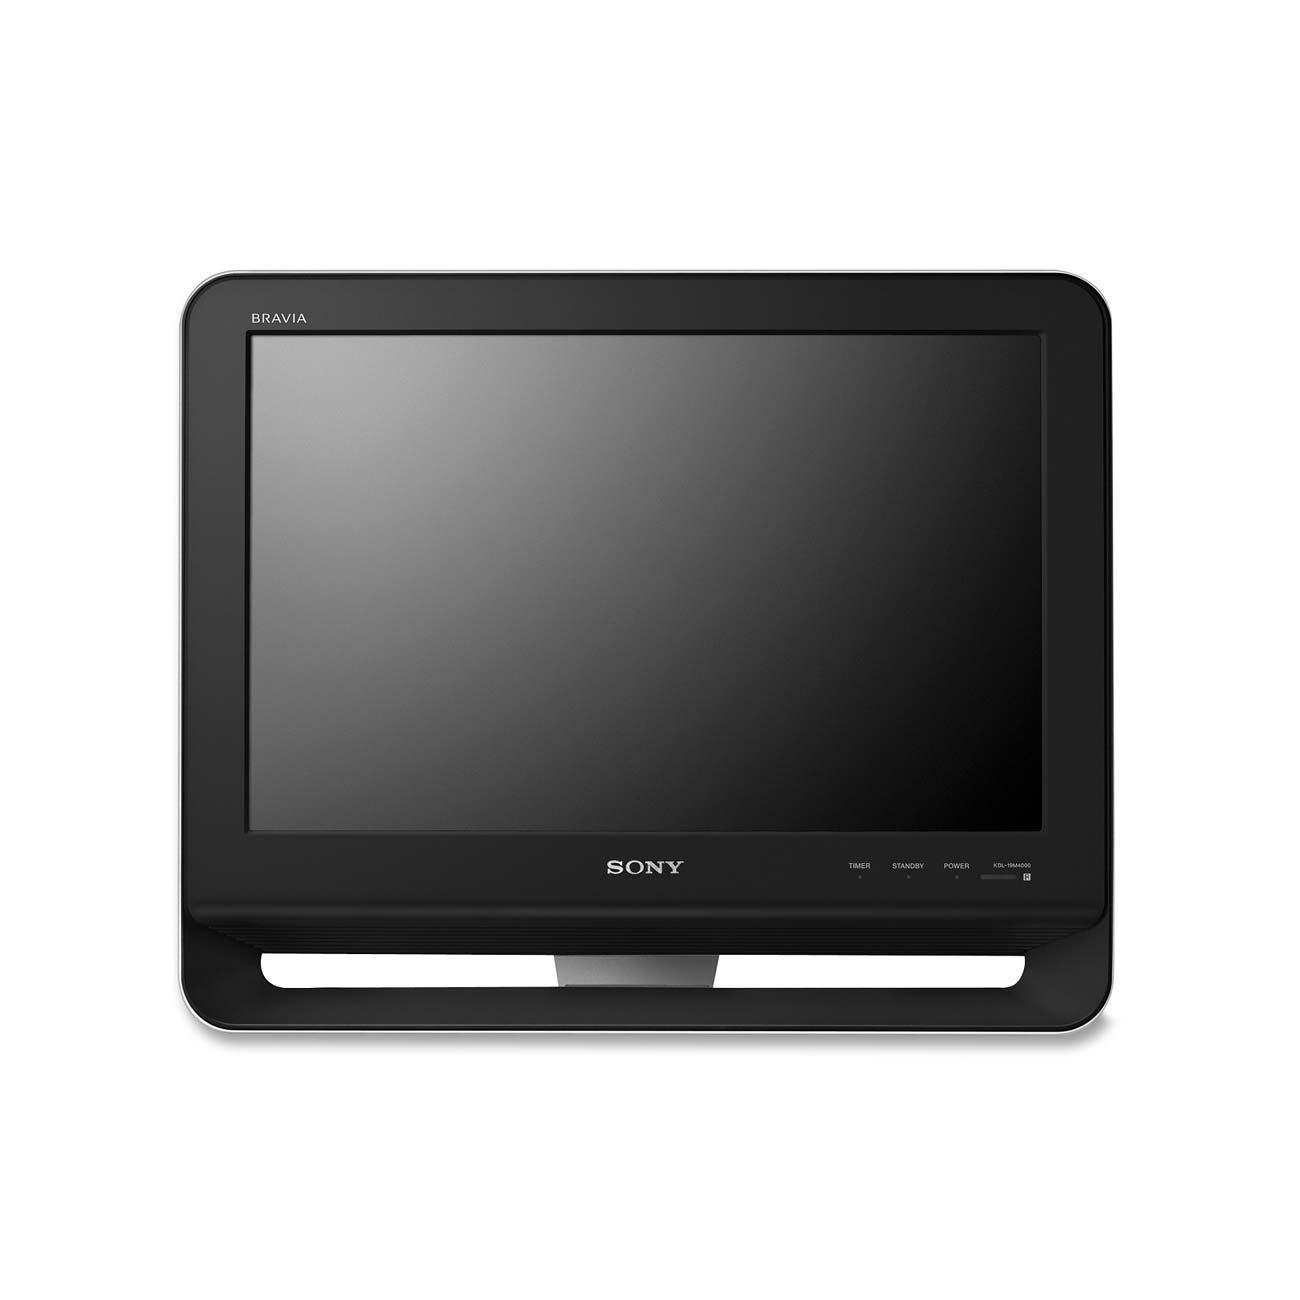 vrouwelijk specificeren Kampioenschap Best Buy: Sony BRAVIA 19" Class (19" Diag.) LCD TV Black, Silver KDL-19M4000